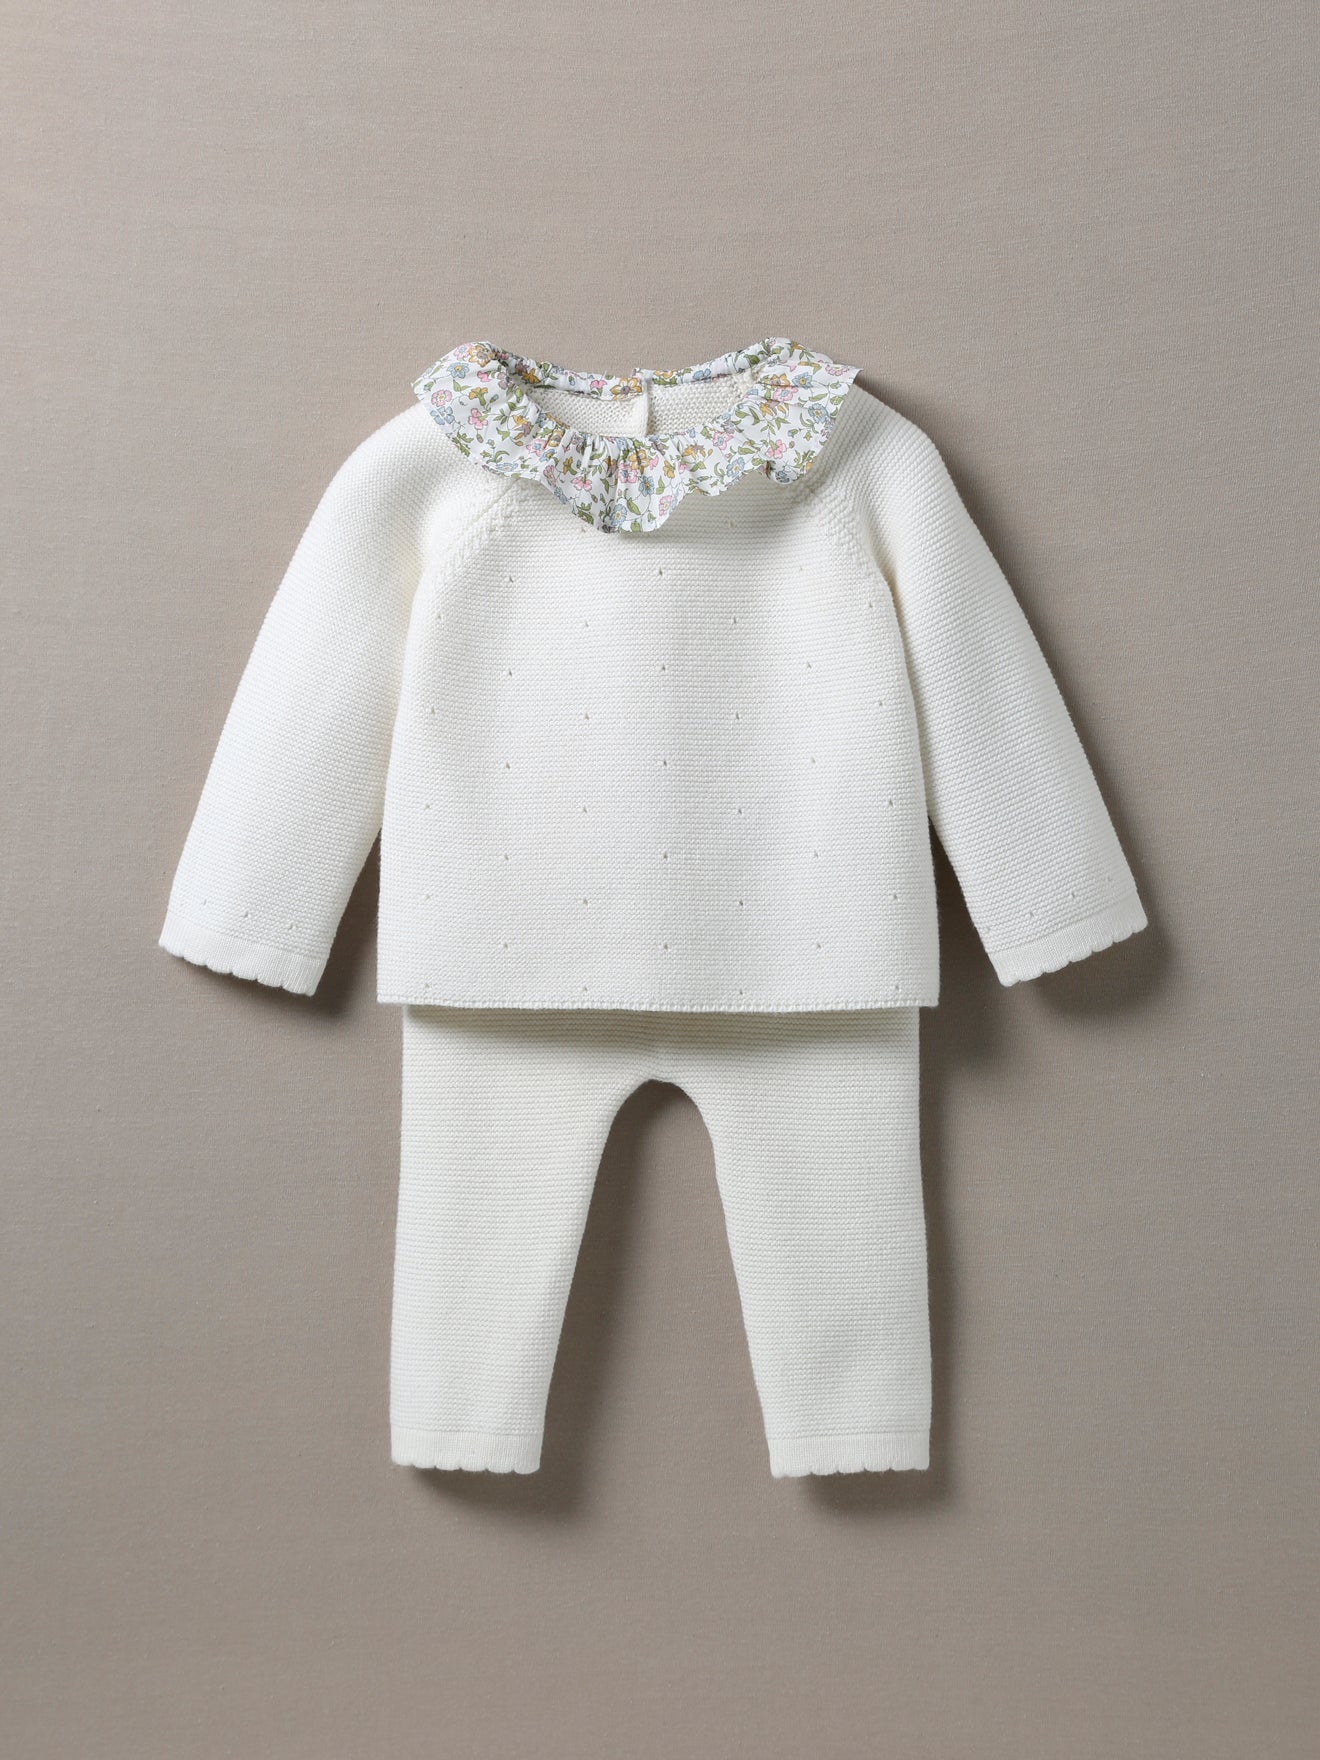 Body bébé mixte unisexe en jersey coton blanc brodé Ourson gris fabriqué au  Portugal